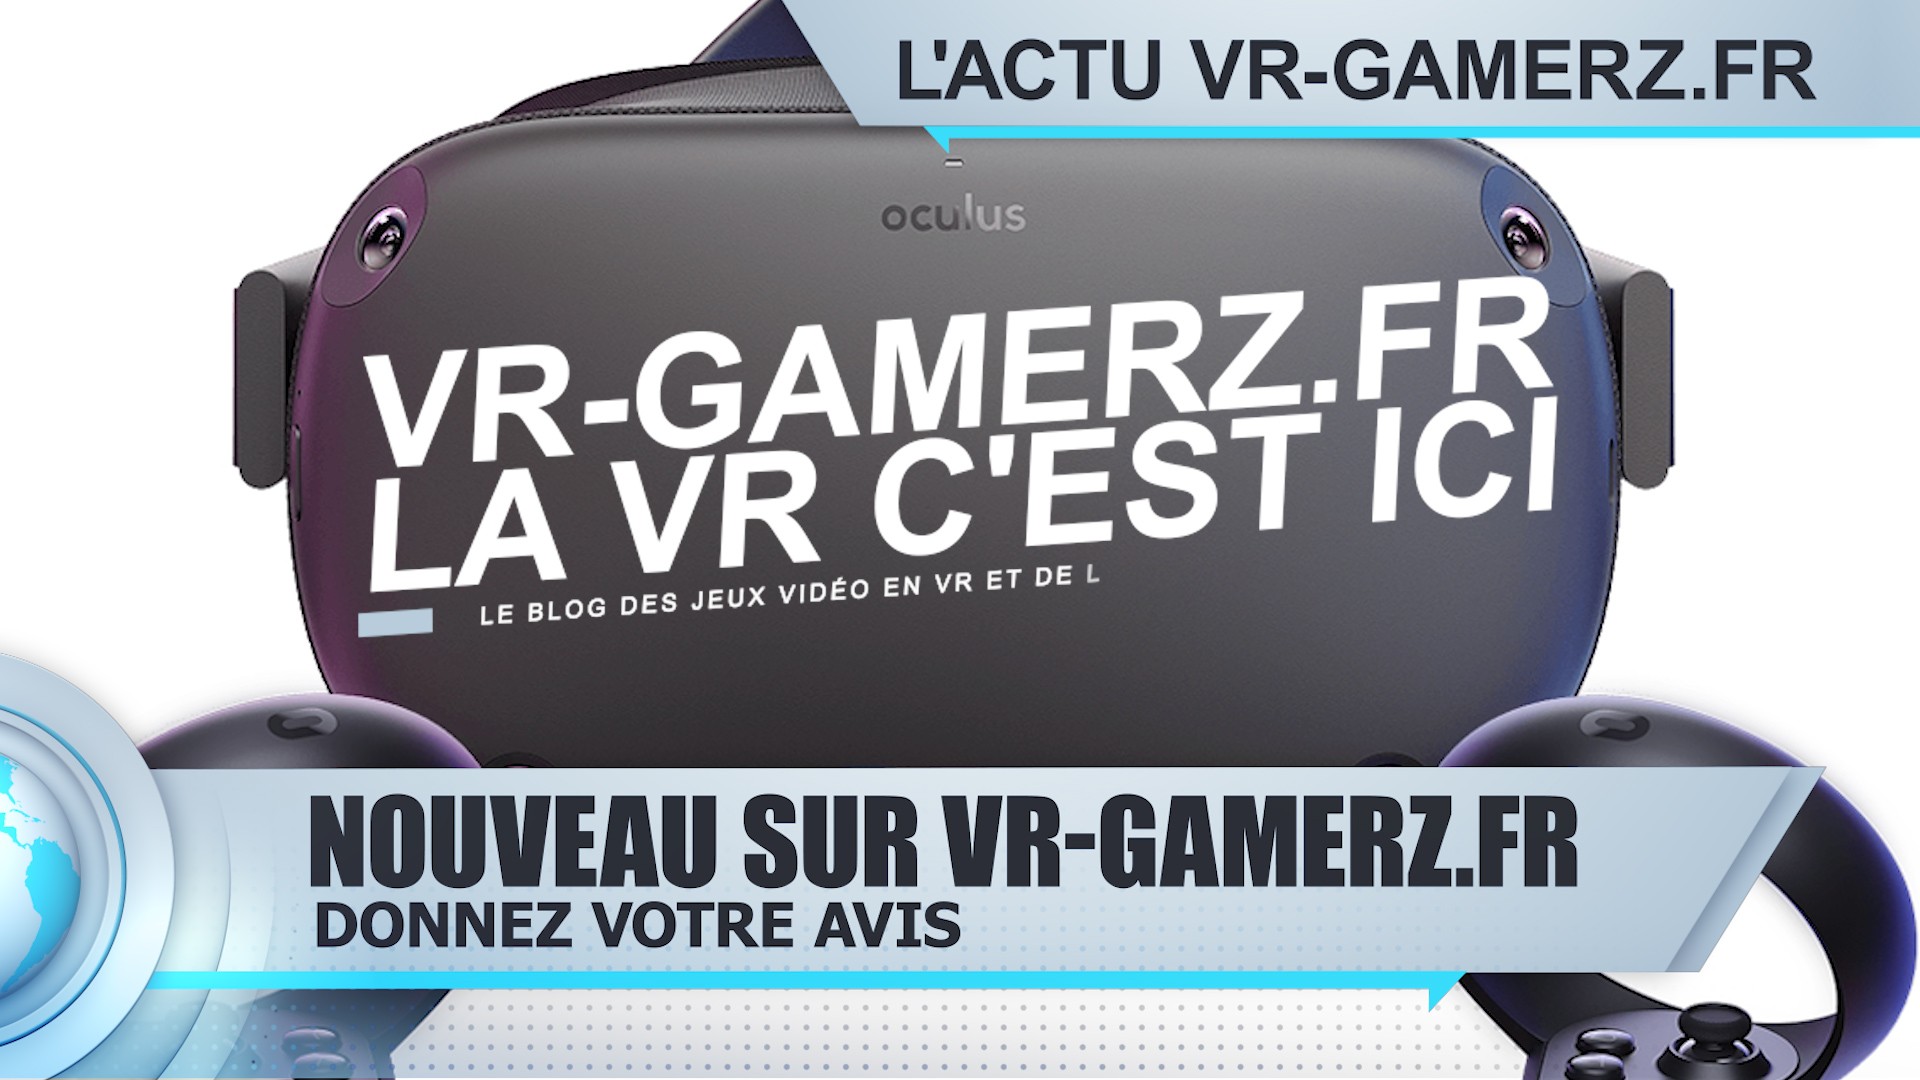 Nouveau, donnez votre avis sur VR-gamerz.fr